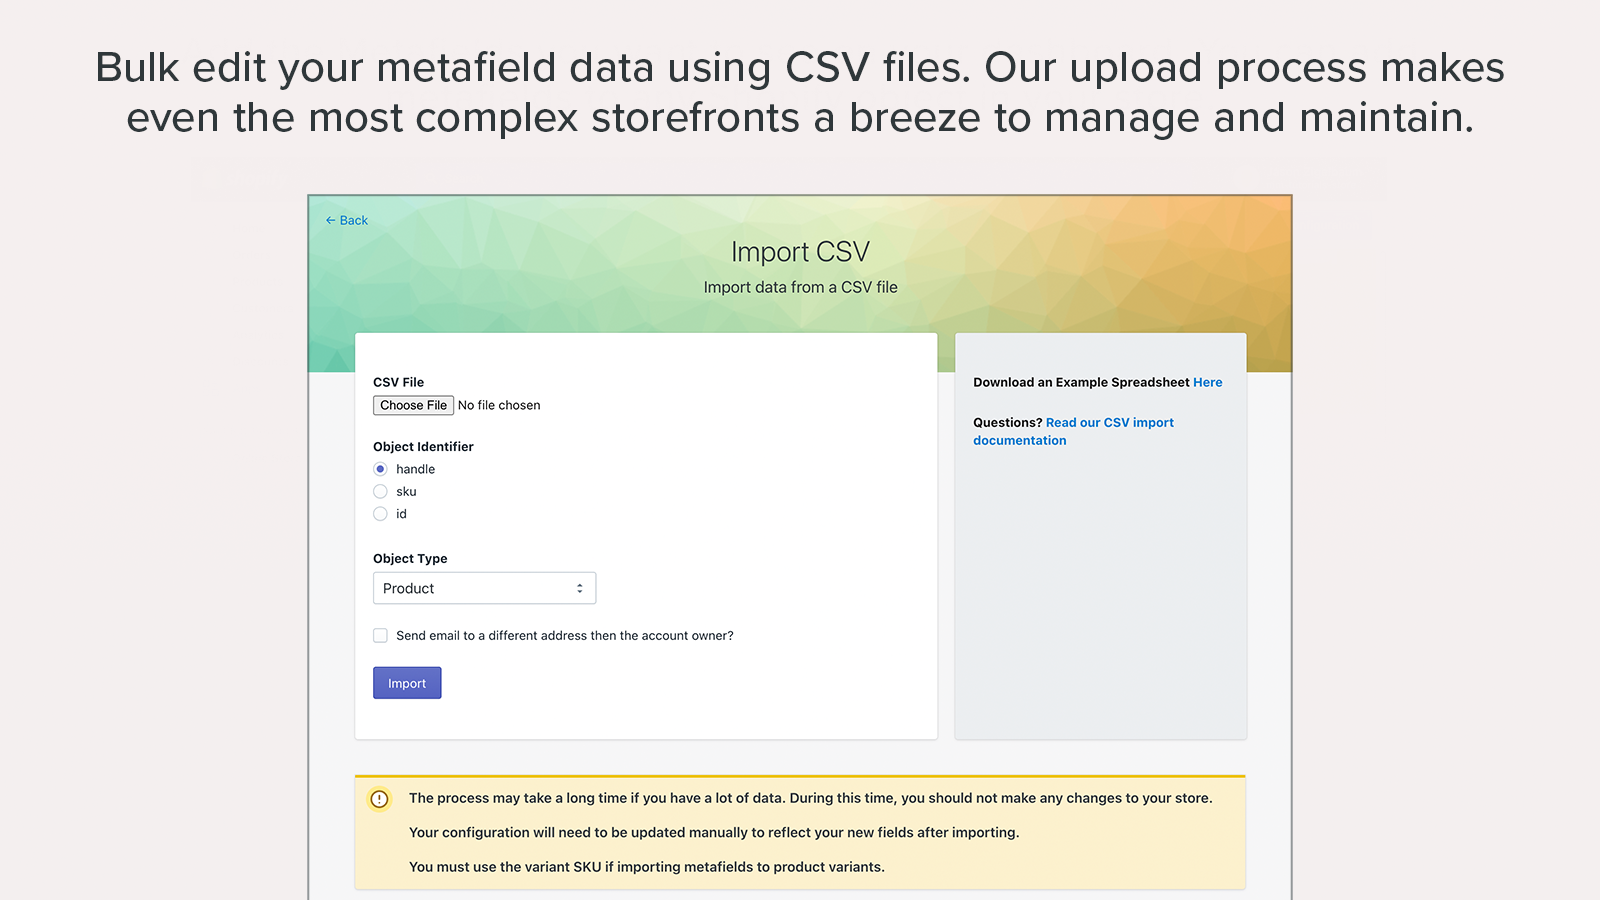 Bearbeiten Sie Ihre Metafeld-Daten in großen Mengen mit CSV-Dateien. Unser Upload-Prozess